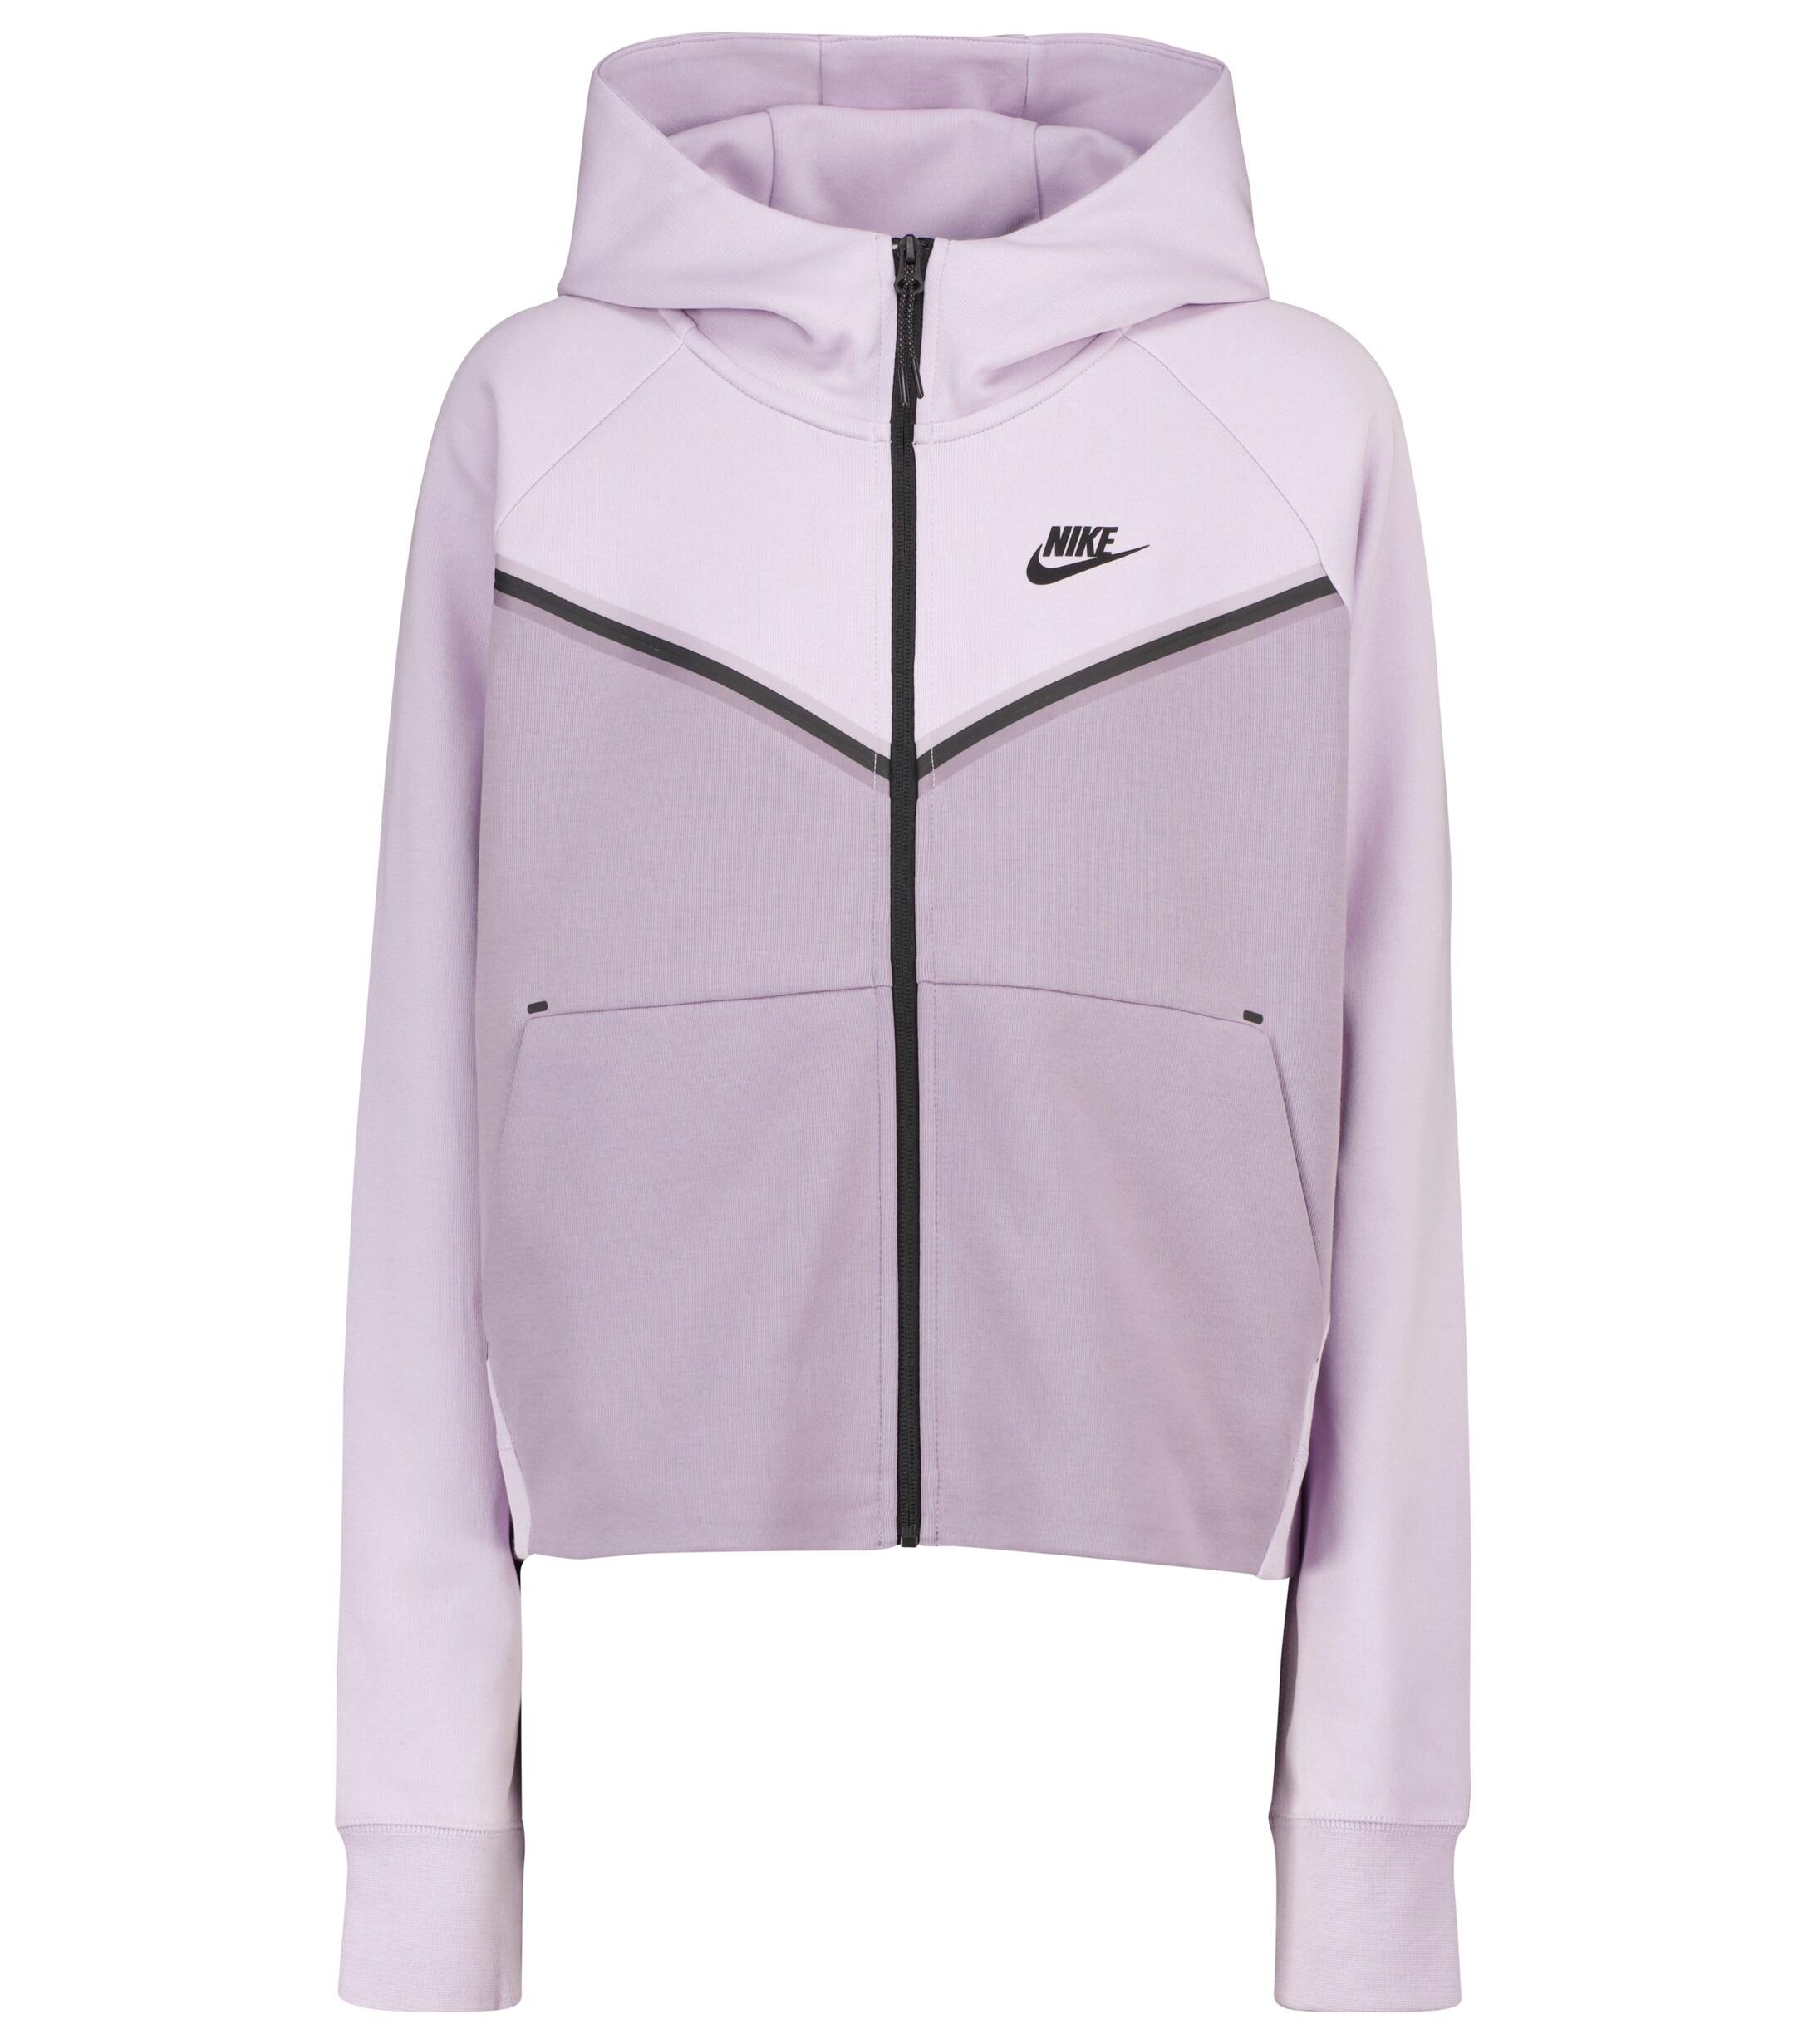 Nike Tech-fleece Windrunner Jacket in Purple - Lyst